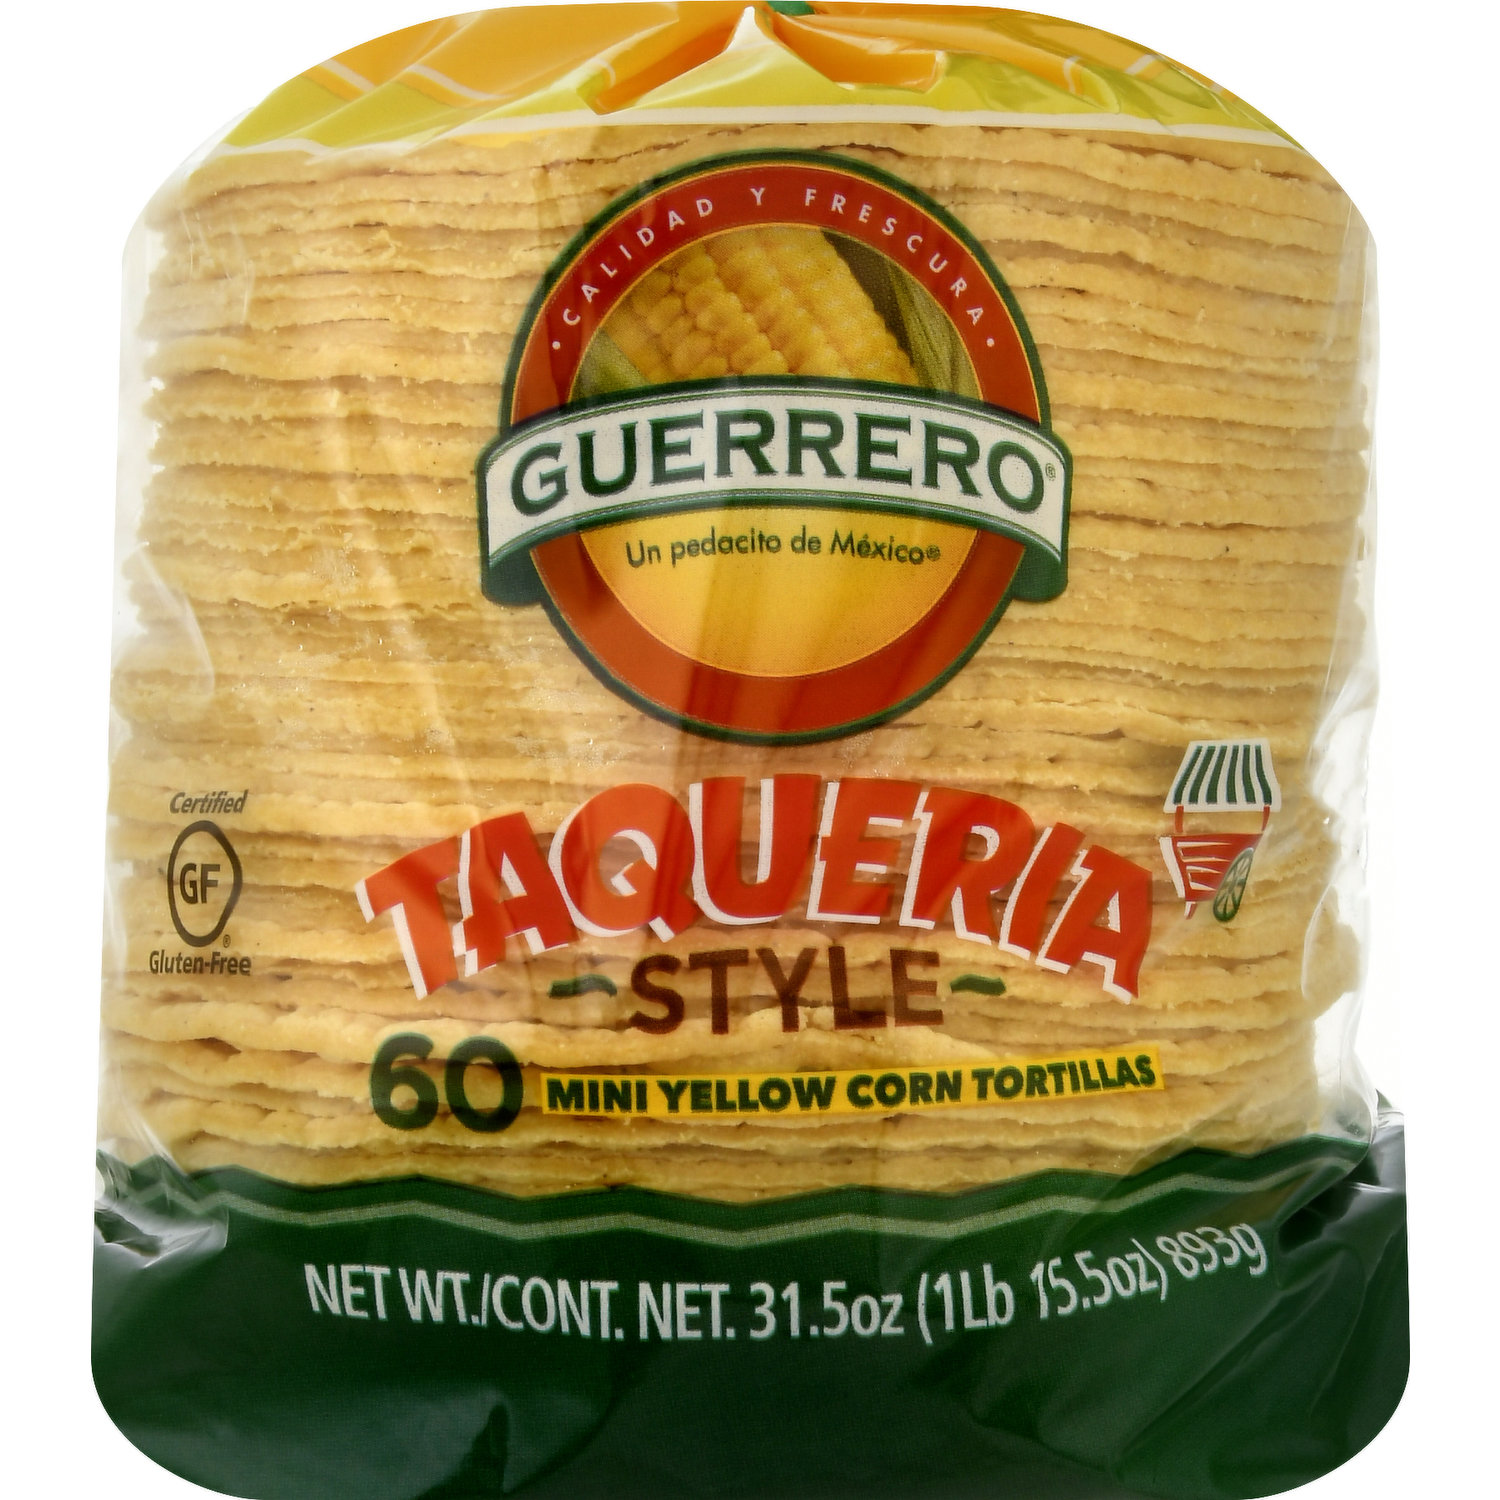 Guerrero Tortillas, Yellow Corn, Taqueria Style, Mini - Smart & Final